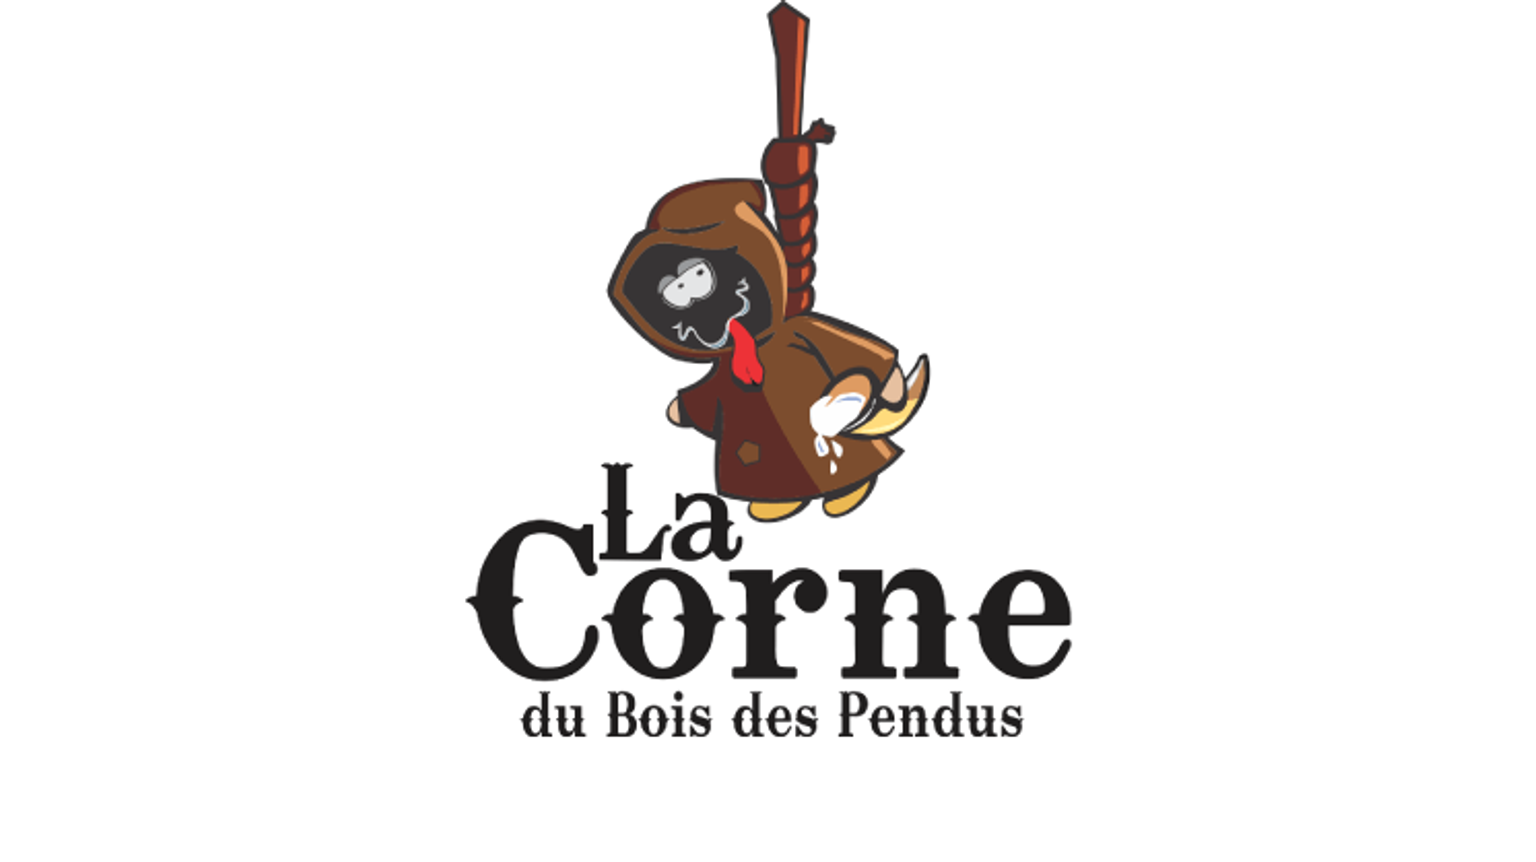 thumbnail for blog article named: L'histoire dramatique de La Corne du Bois des Pendus